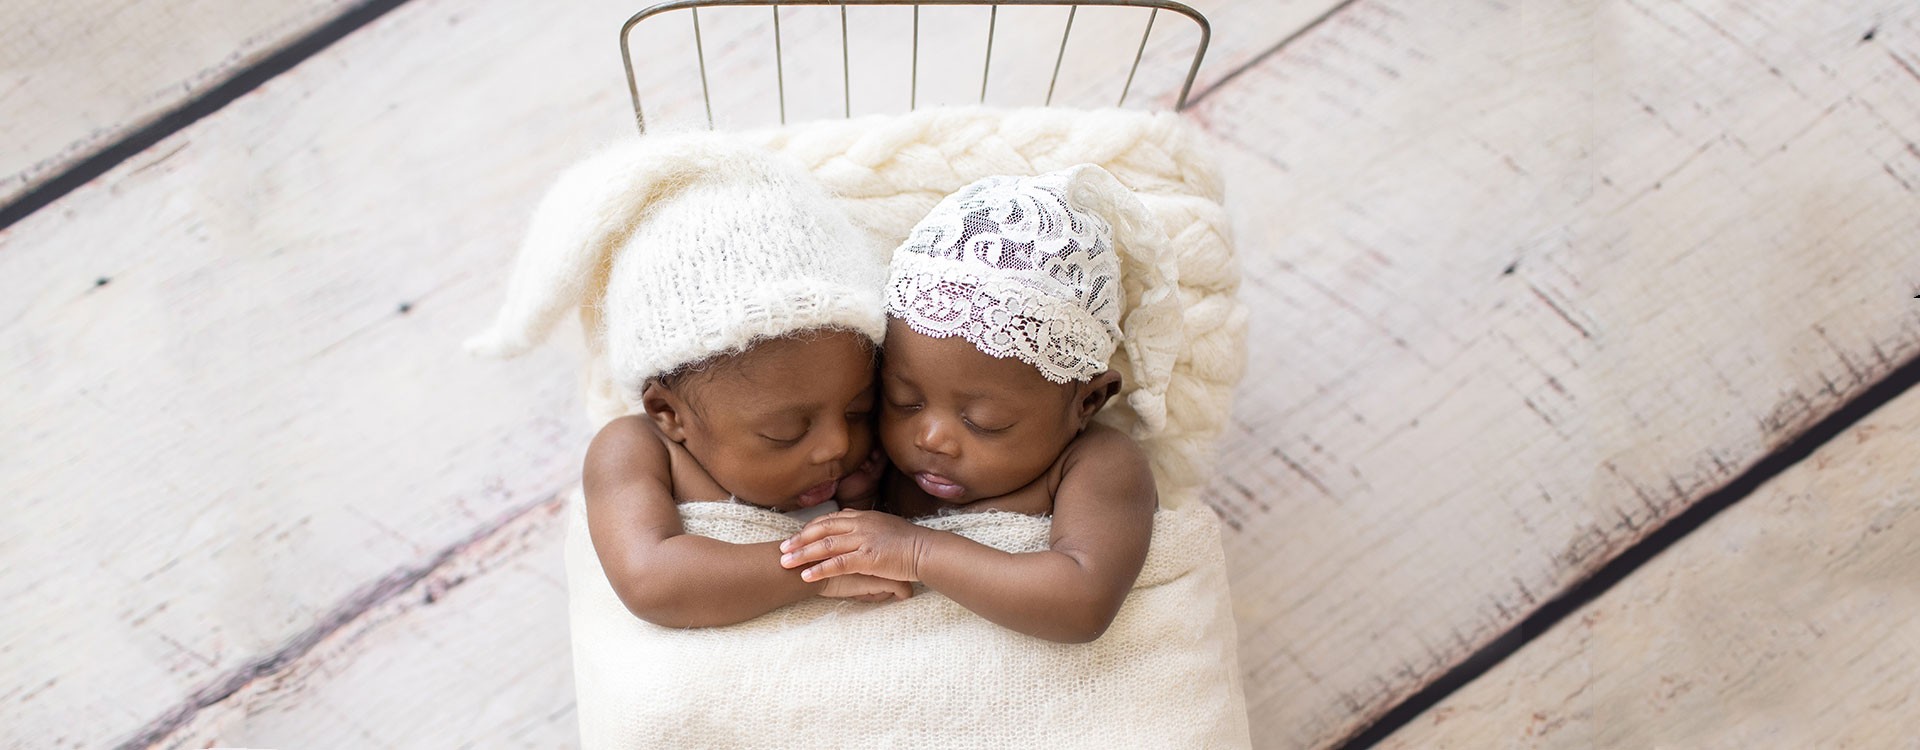 Newborn-Twins-White-and-Beige-blankets-2-10